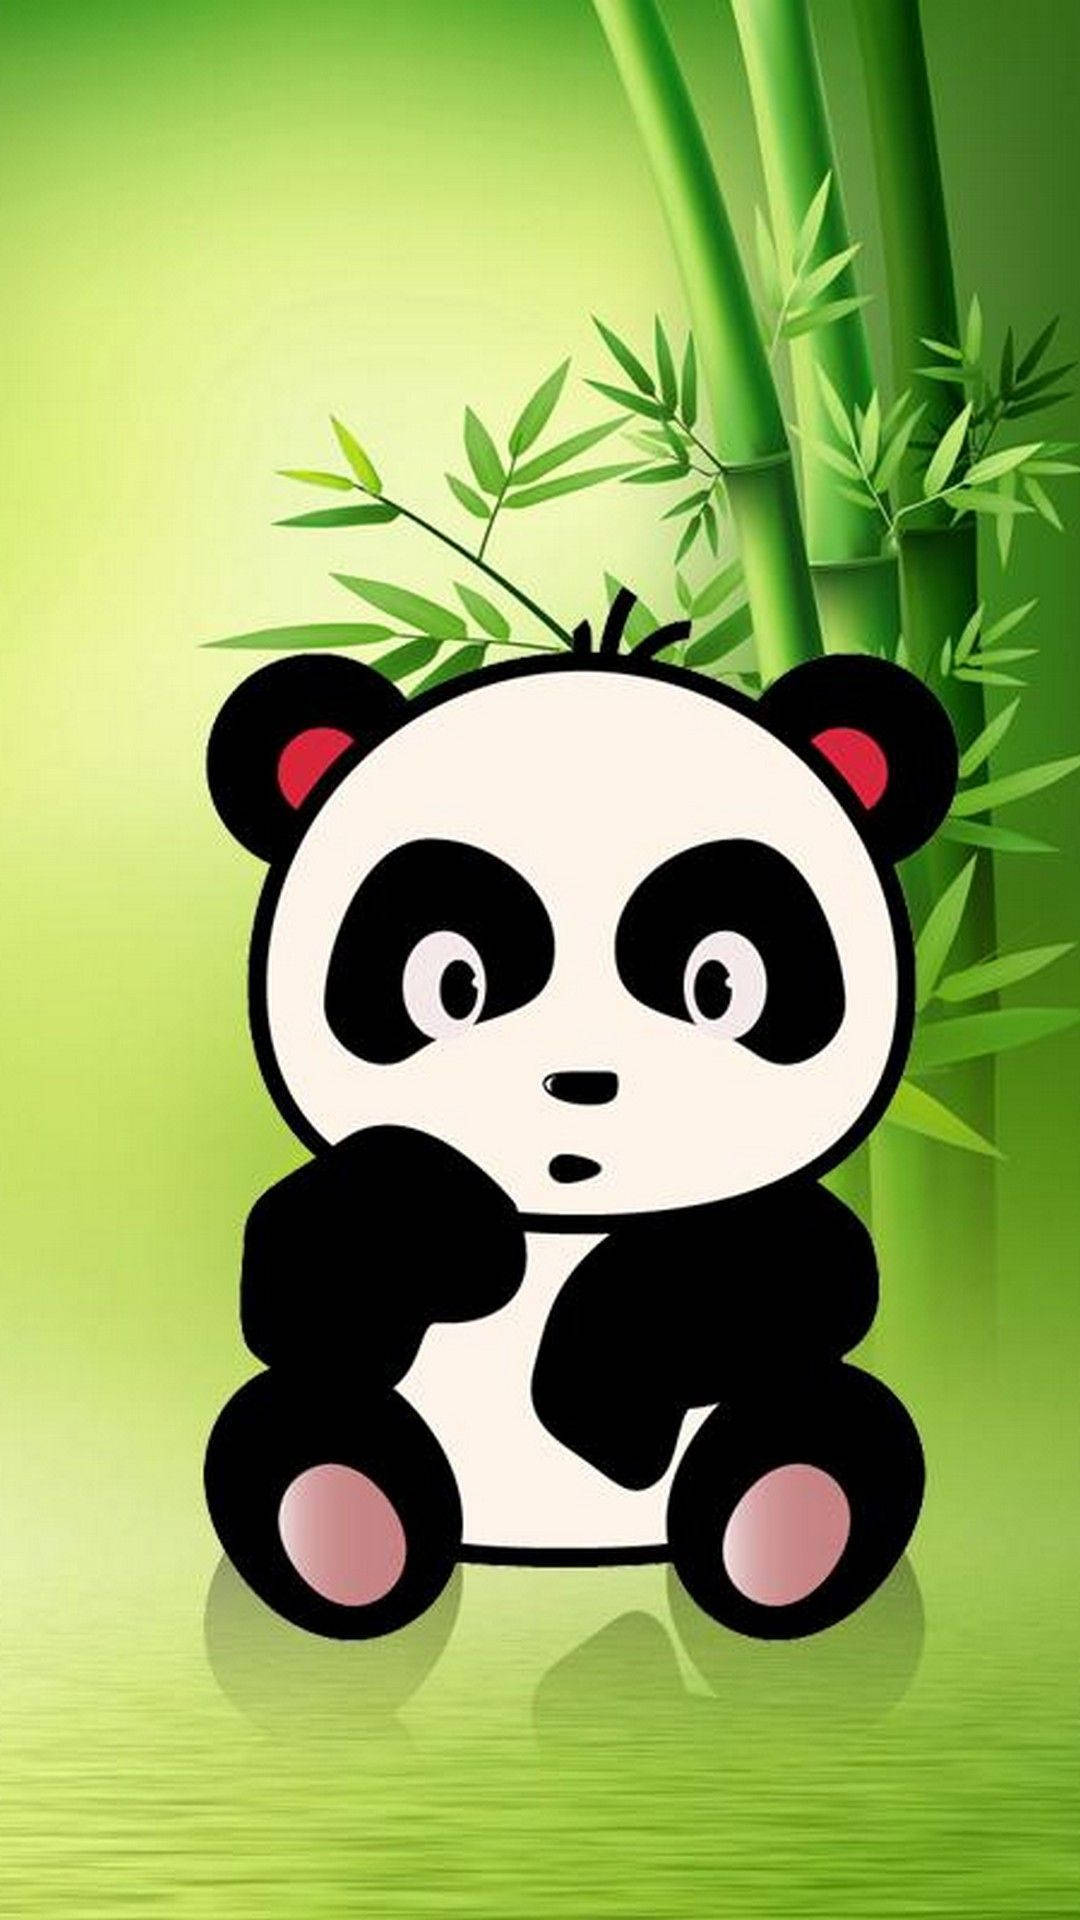 Cute Panda Wallpaper Images - Free Download on Freepik